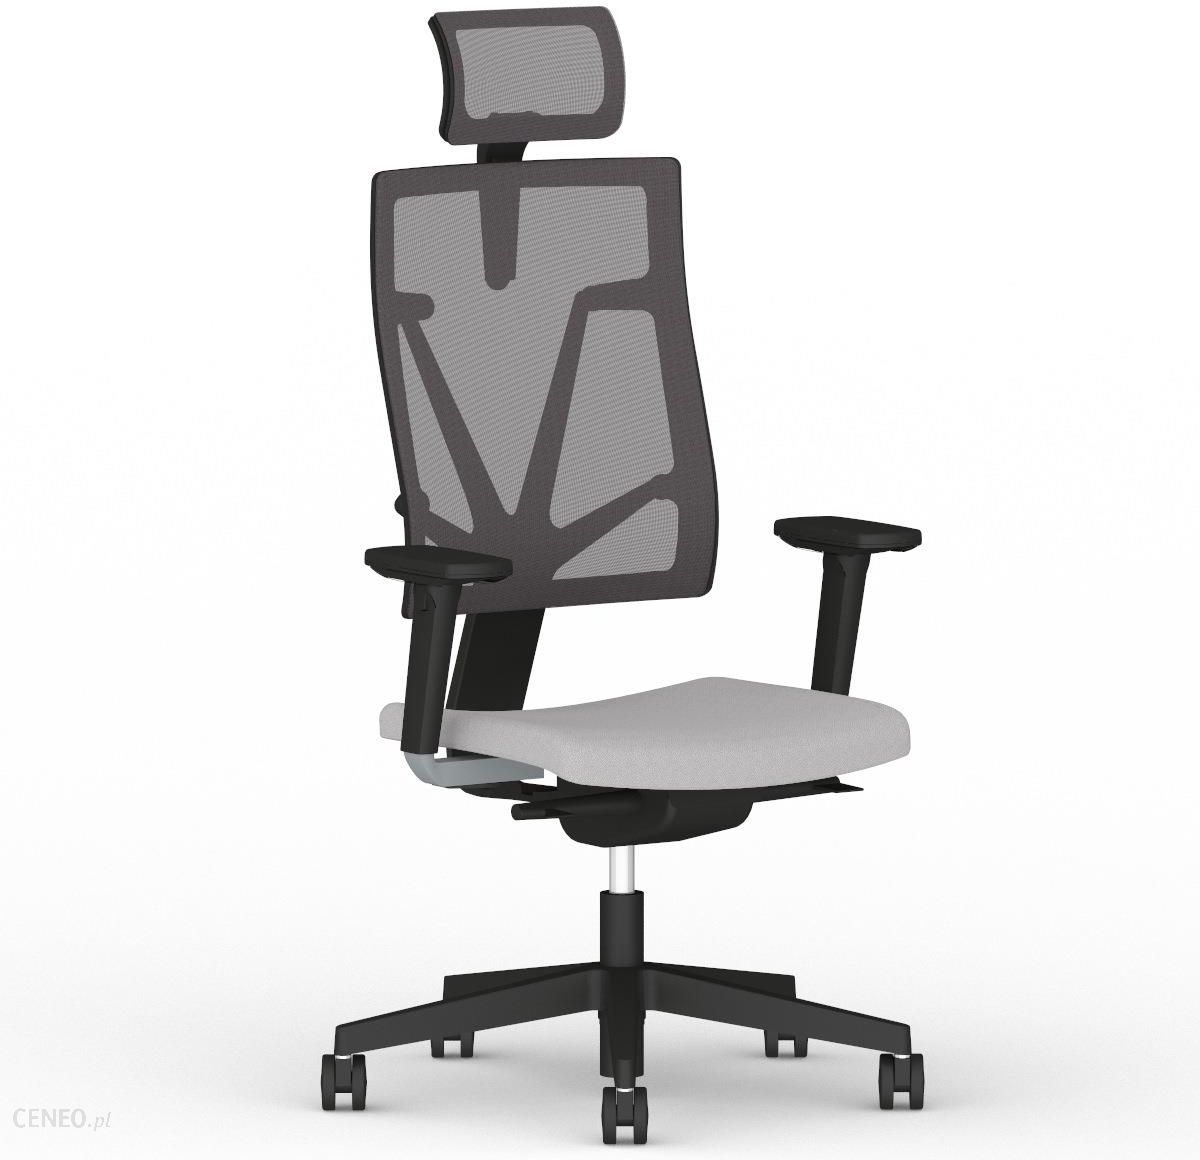 Nowy Styl Krzeslo Biurowe Obrotowe 4me Mesh Bl Hrma Soft Seat Esp Ceny I Opinie Ceneo Pl